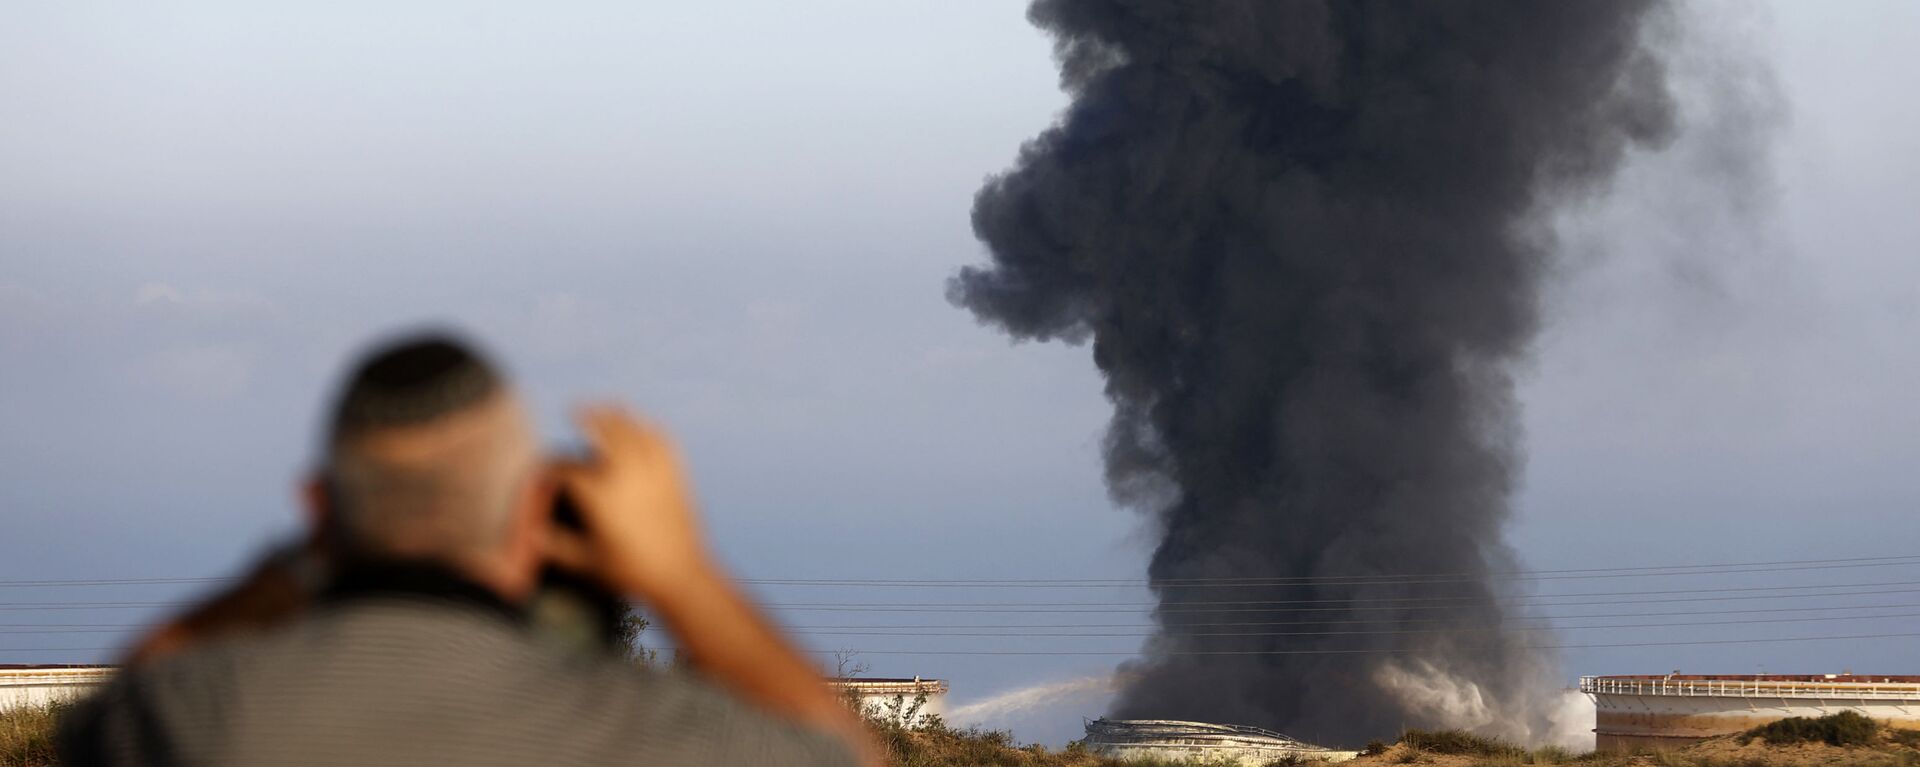 Một người đàn ông Israel nhìn từ xa khi khói bốc lên vào sáng sớm ngày 12 tháng 5 năm 2021 từ nhà máy lọc dầu của Ashkelon, bị trúng tên lửa Hamas vào ngày hôm trước, ở thành phố phía nam Israel, gần Dải Gaza - Sputnik Việt Nam, 1920, 13.05.2021